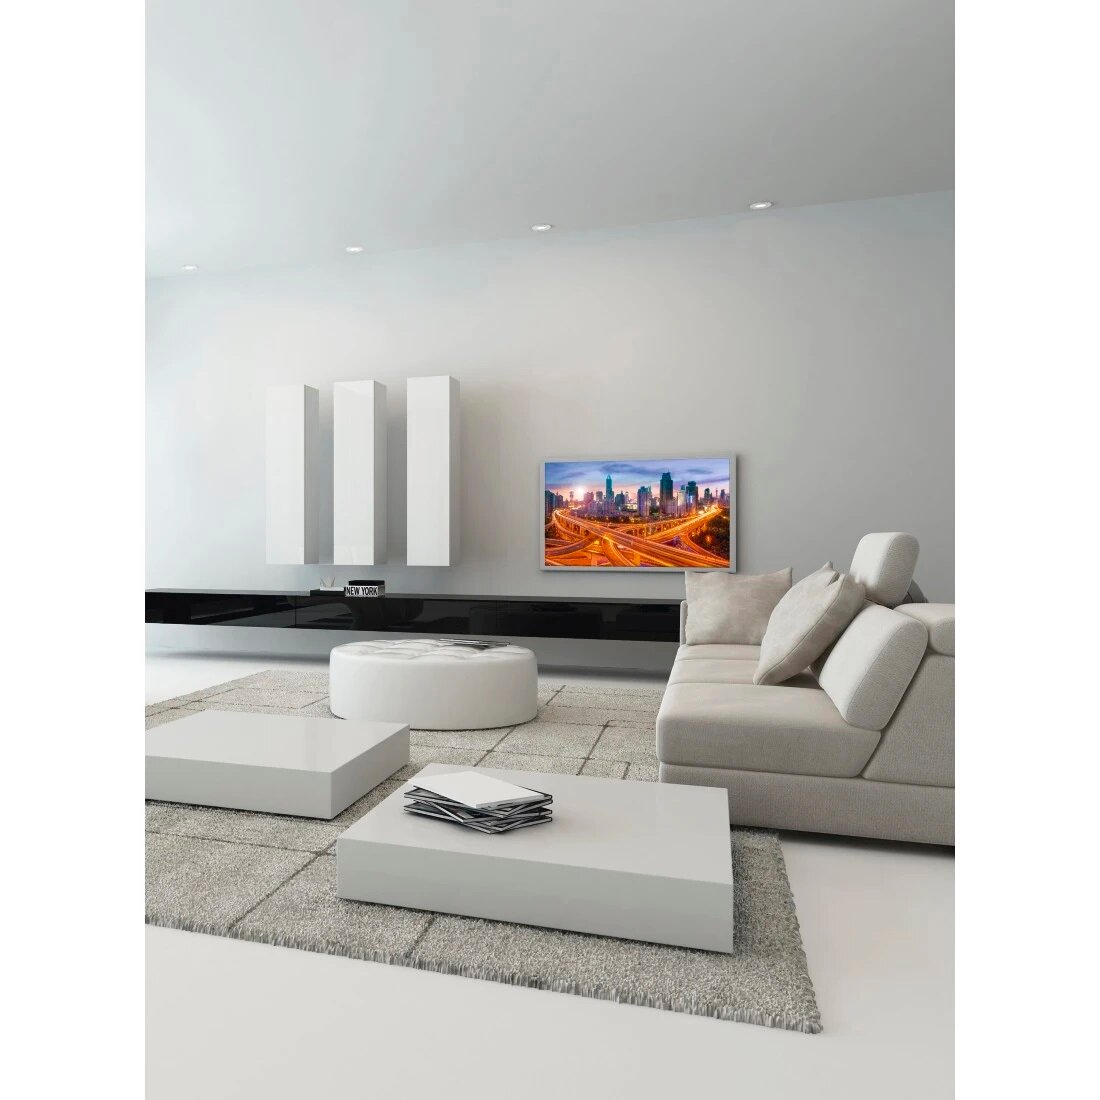 Uchwyt do telewizora Hama Vesa 400x400 Premium Fix LCD 65” telewizor zamontowany za pomocą uchwytu na ścianie